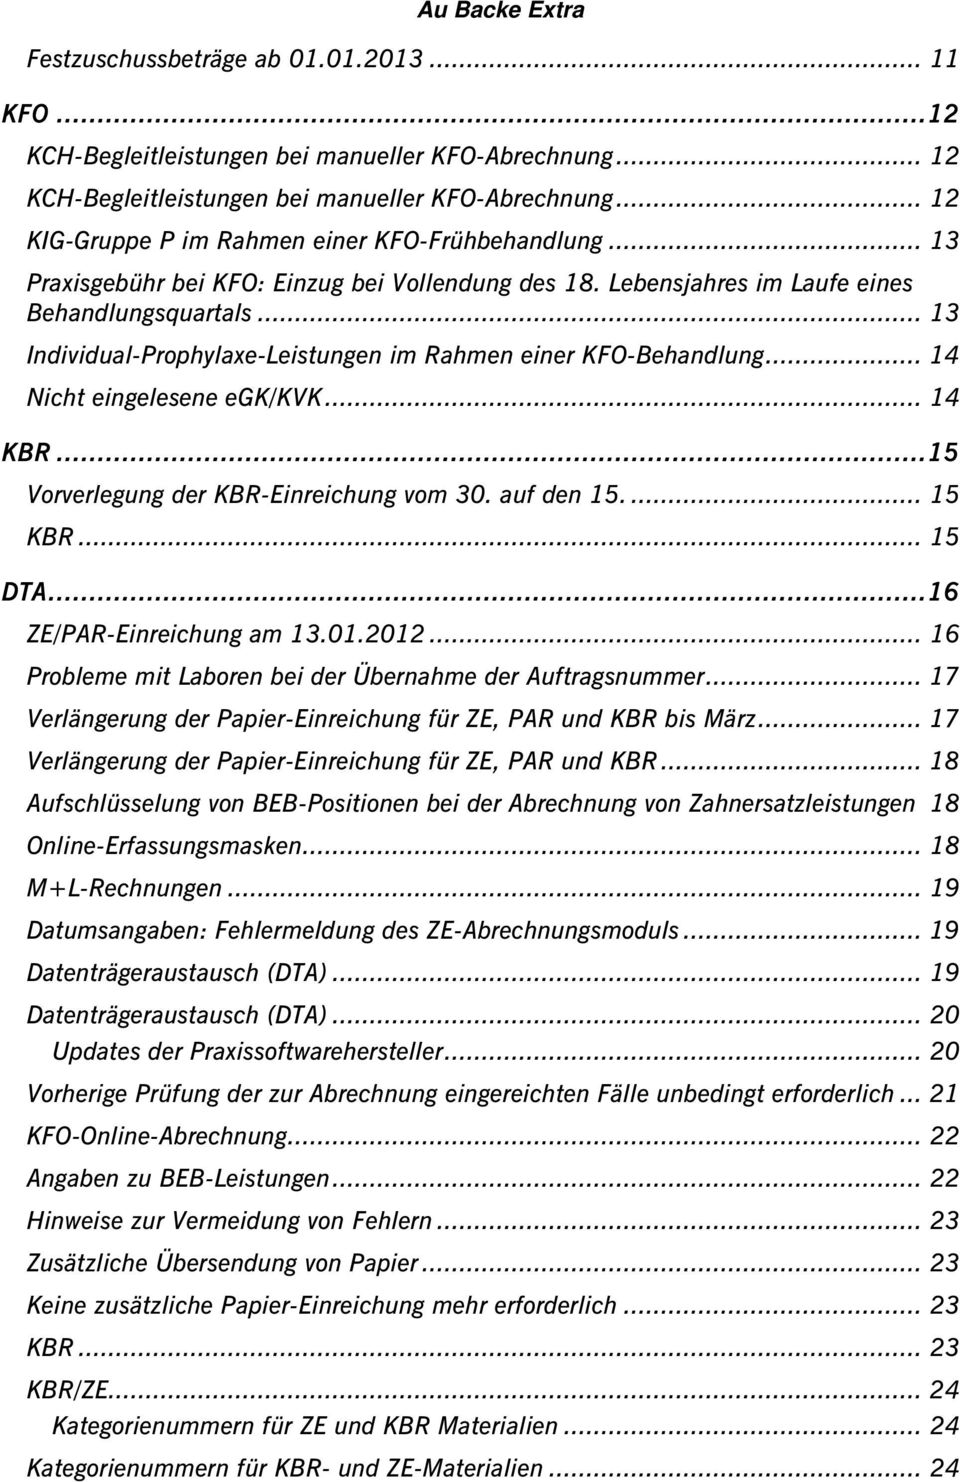 .. 13 Individual-Prophylaxe-Leistungen im Rahmen einer KFO-Behandlung... 14 Nicht eingelesene egk/kvk... 14 KBR...15 Vorverlegung der KBR-Einreichung vom 30. auf den 15.... 15 KBR... 15 DTA.